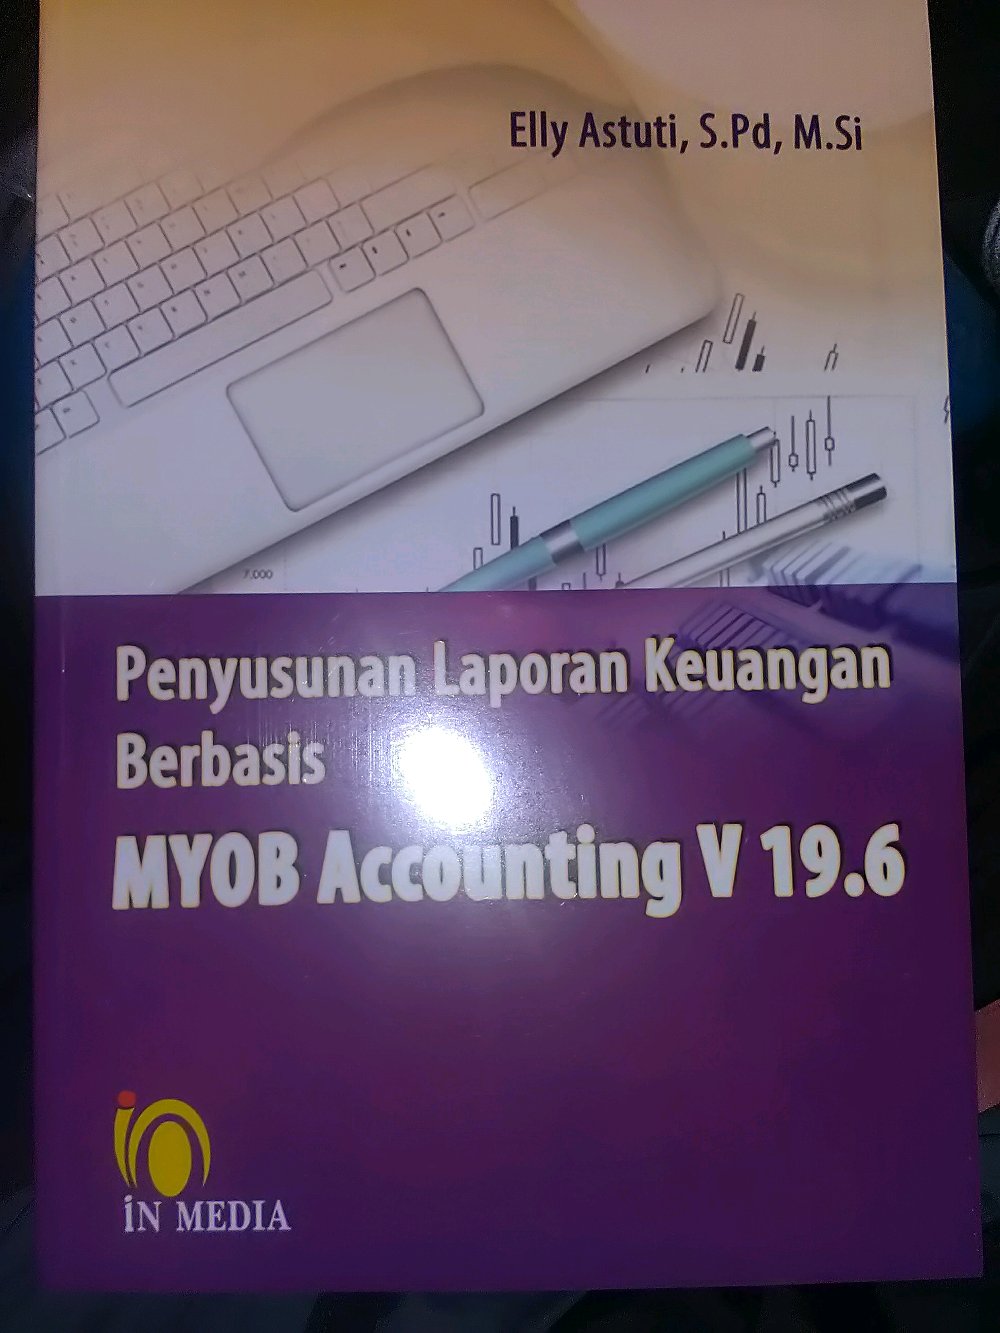 Penyusunan Laporan Keuangan Berbasis MYOB Accounting V 19.6